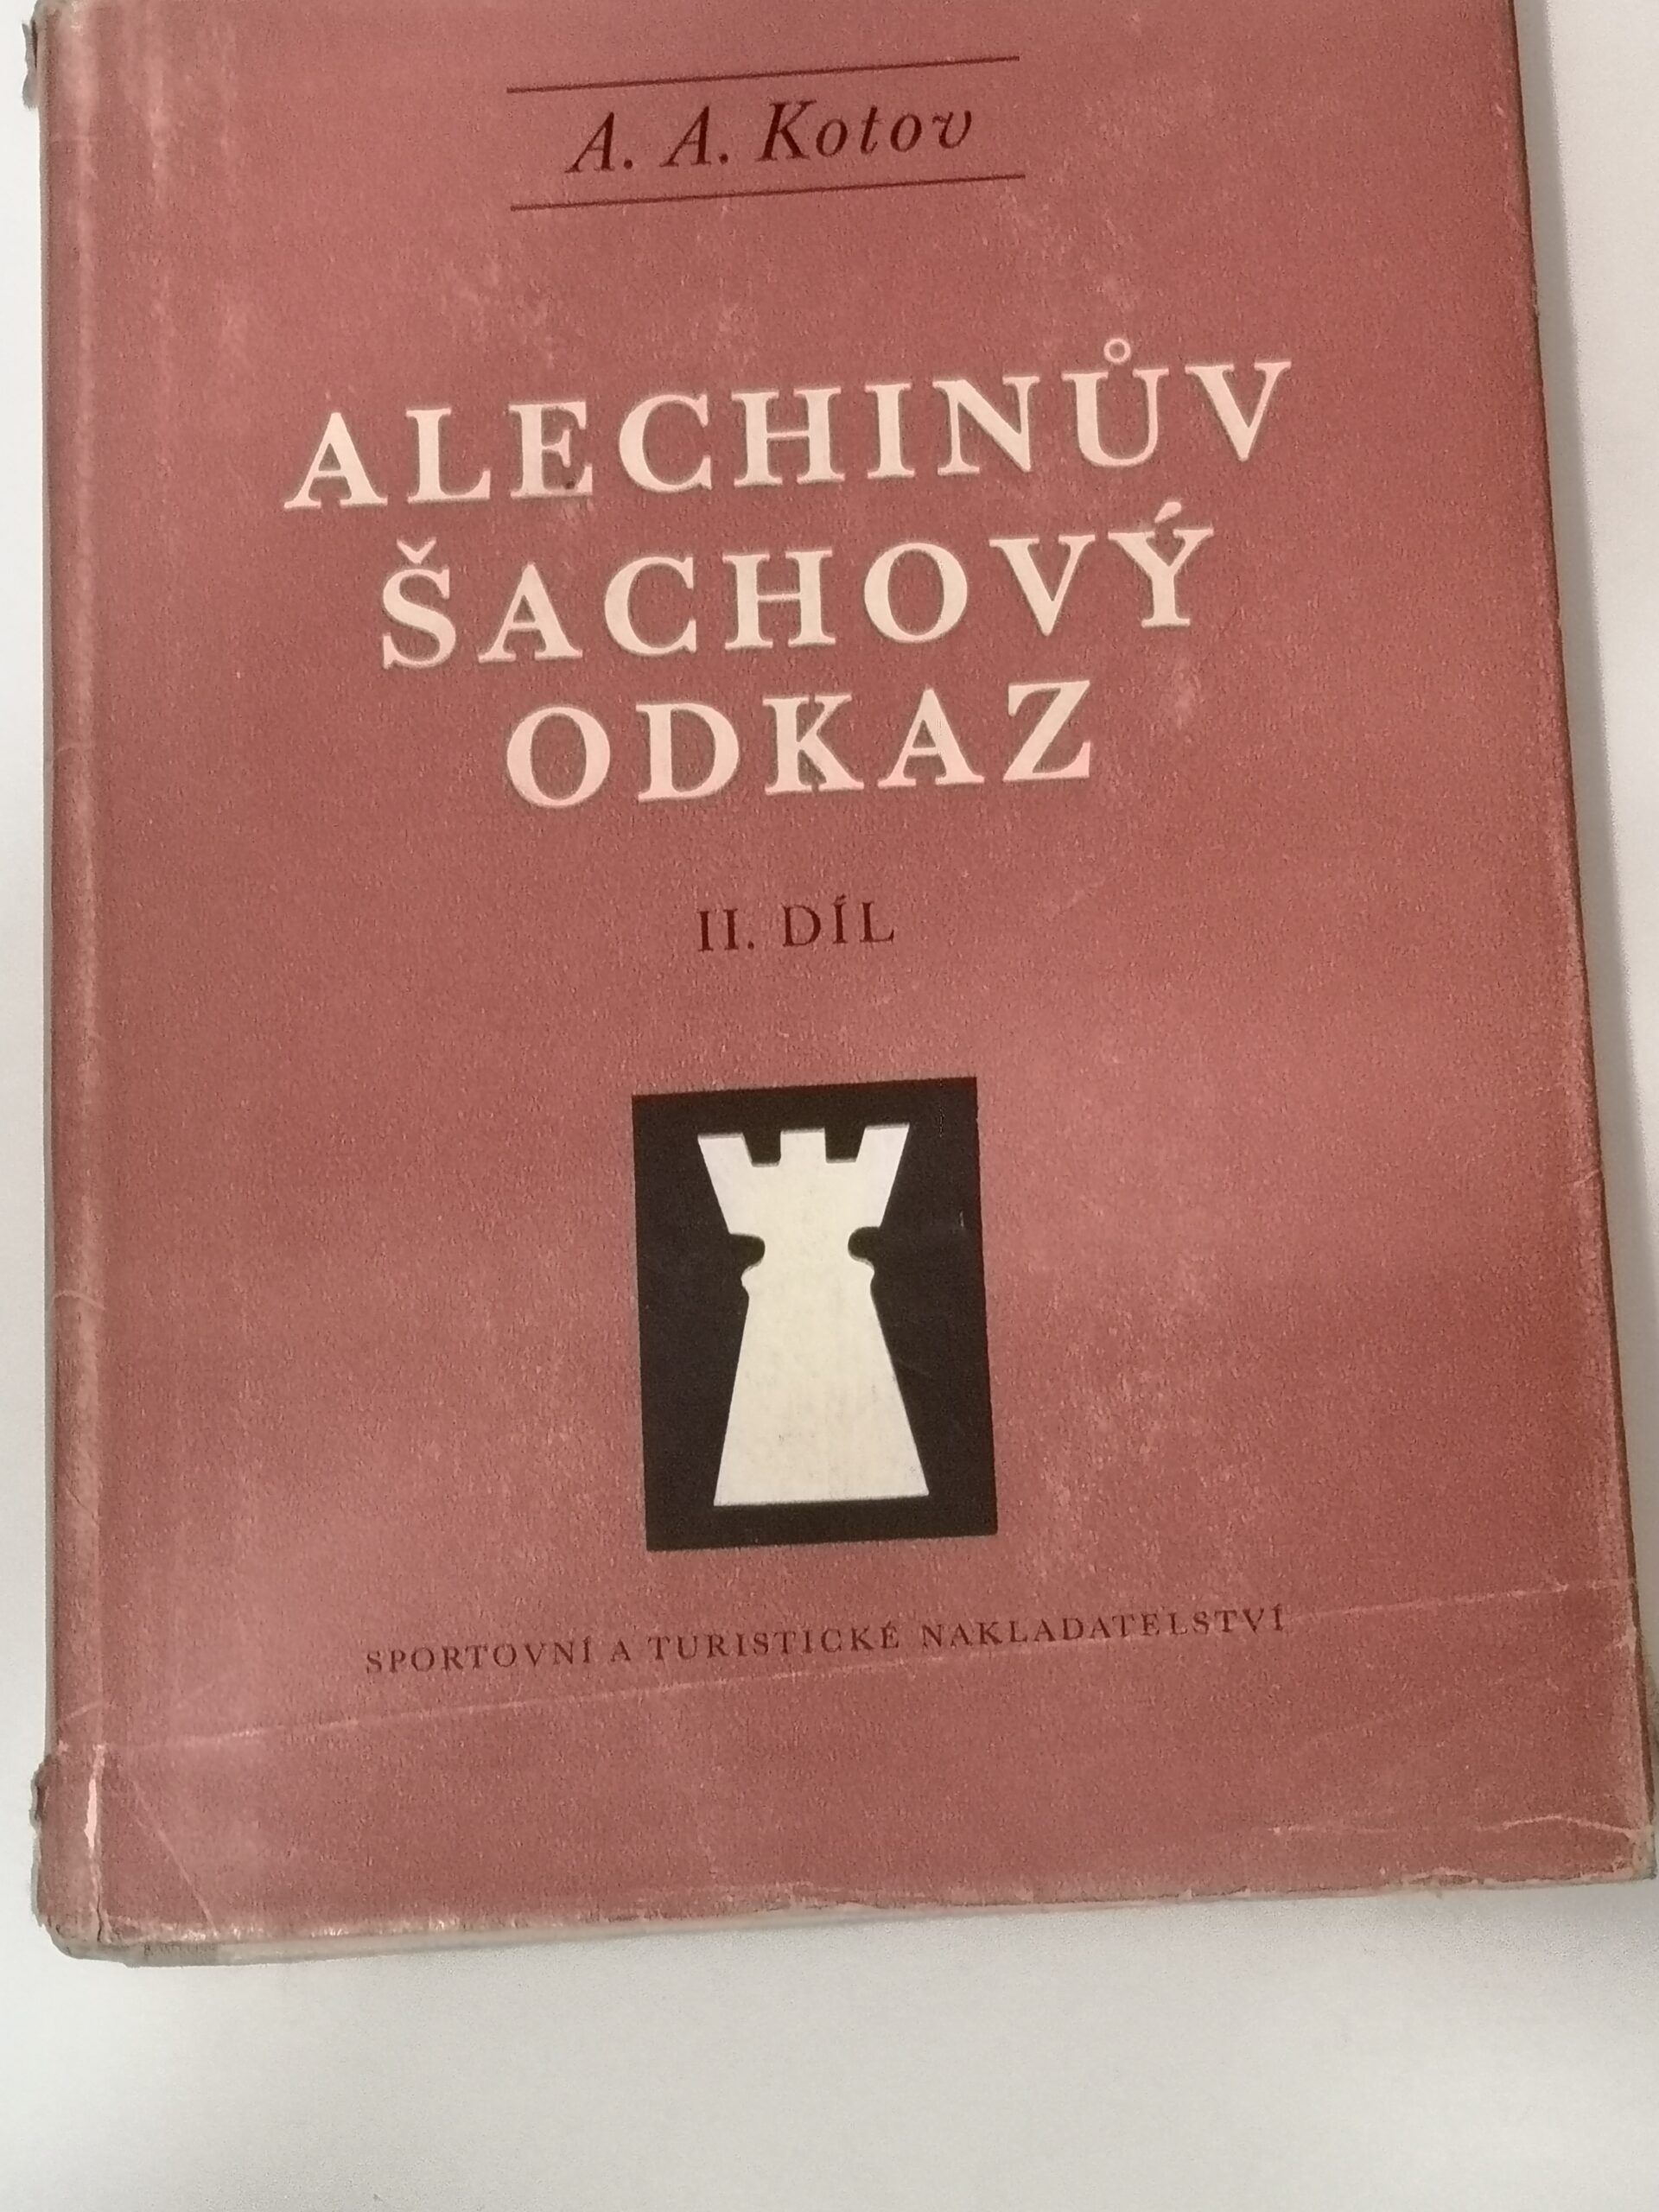 714# Alechinuv Sachovy Odkaz II.DIL (A.Kotov) TOM 2